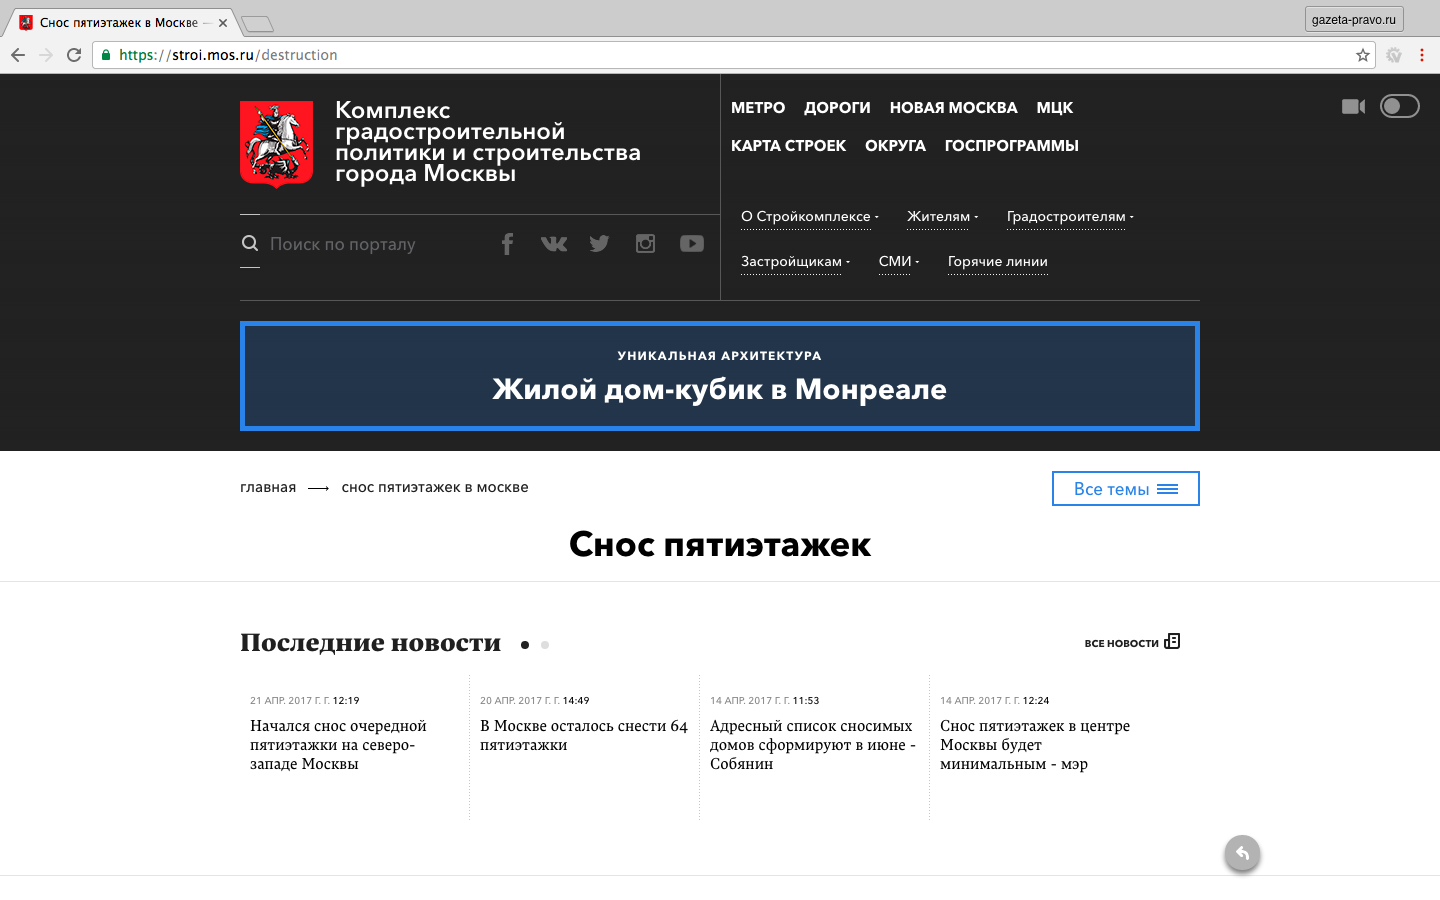 Официальный сайт Комплекса градостроительной политики и строительства города Москвы